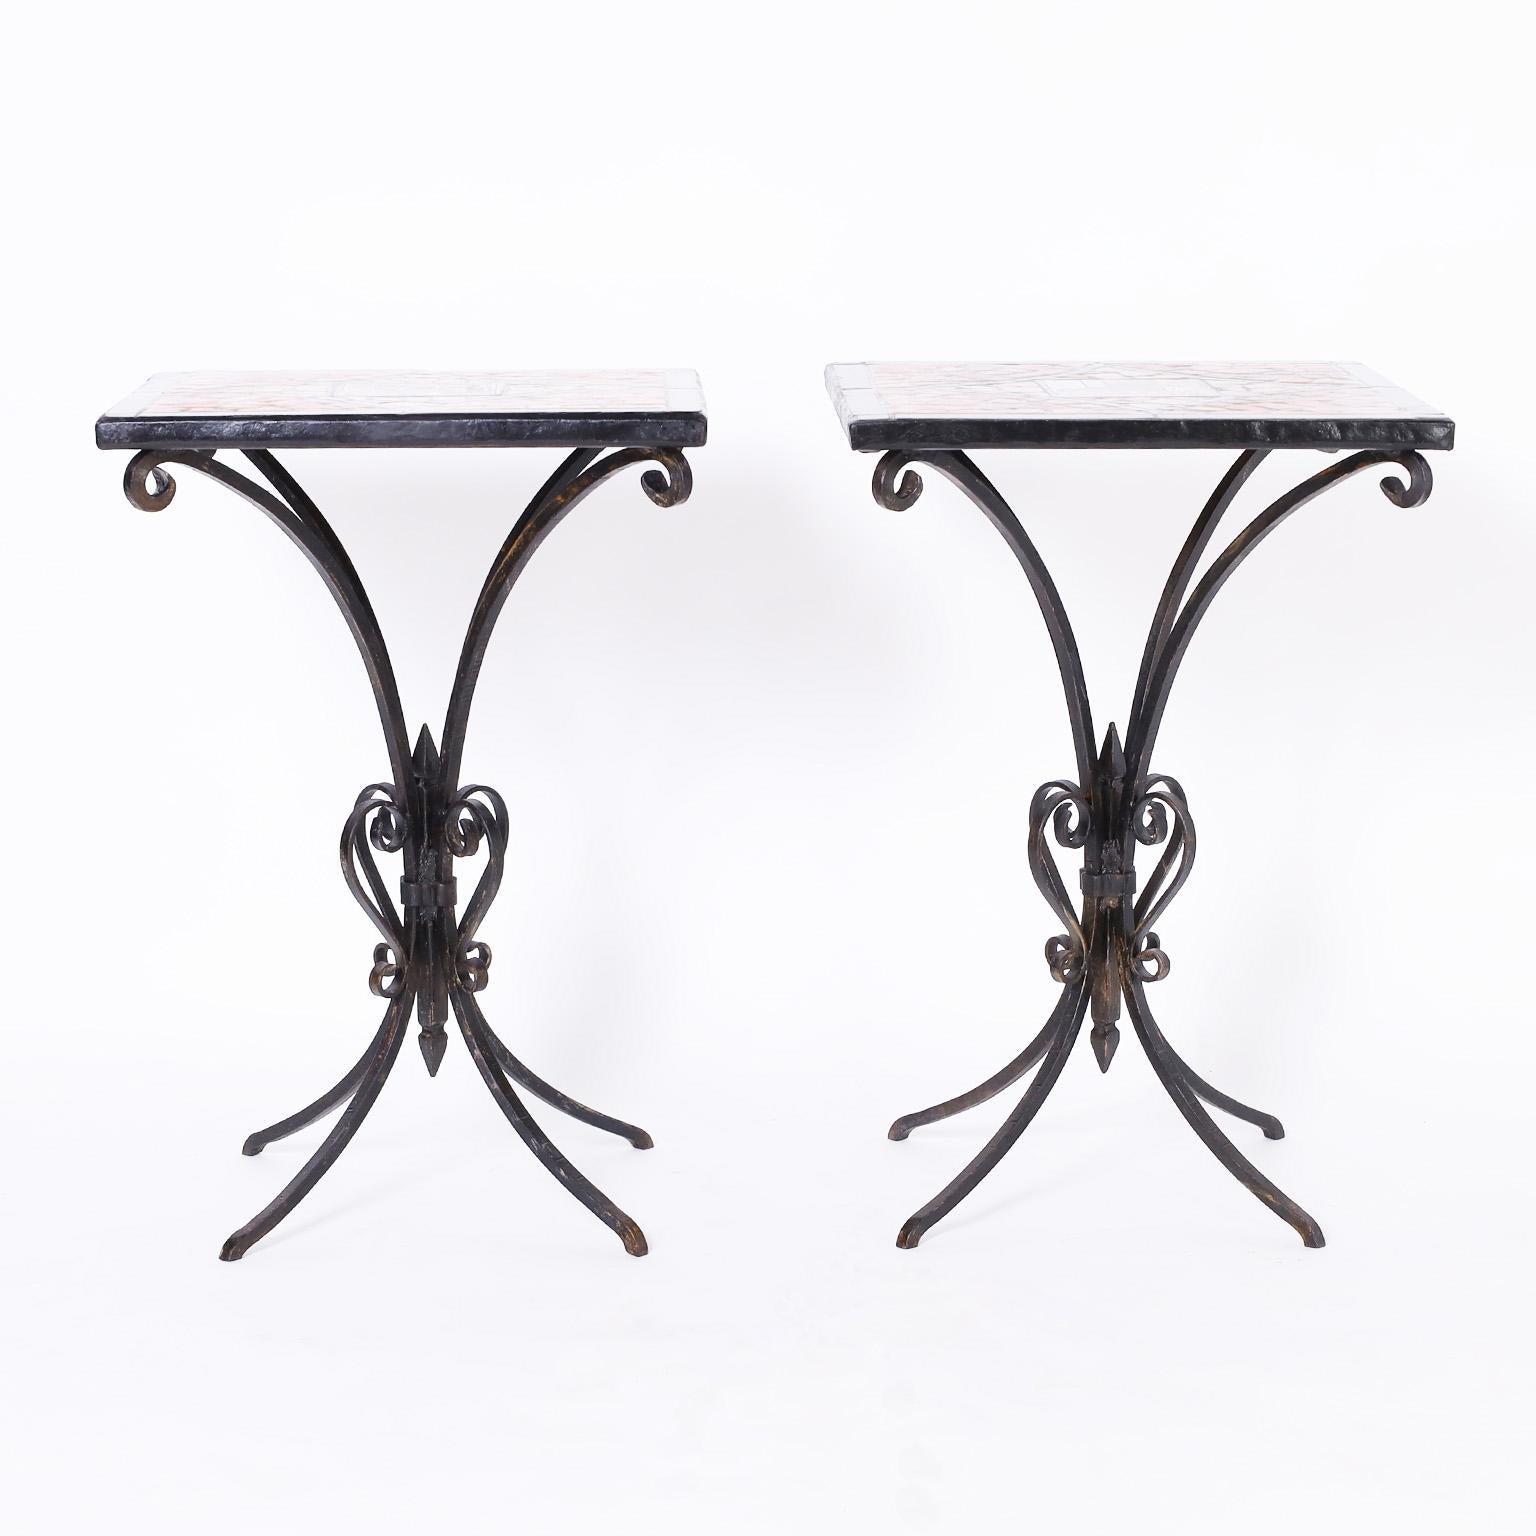 Paire de tables anciennes françaises avec des plateaux en mosaïque colorée et des carreaux centraux de style Art Nouveau. Les bases sont en fer forgé à la main dans une forme élégante.